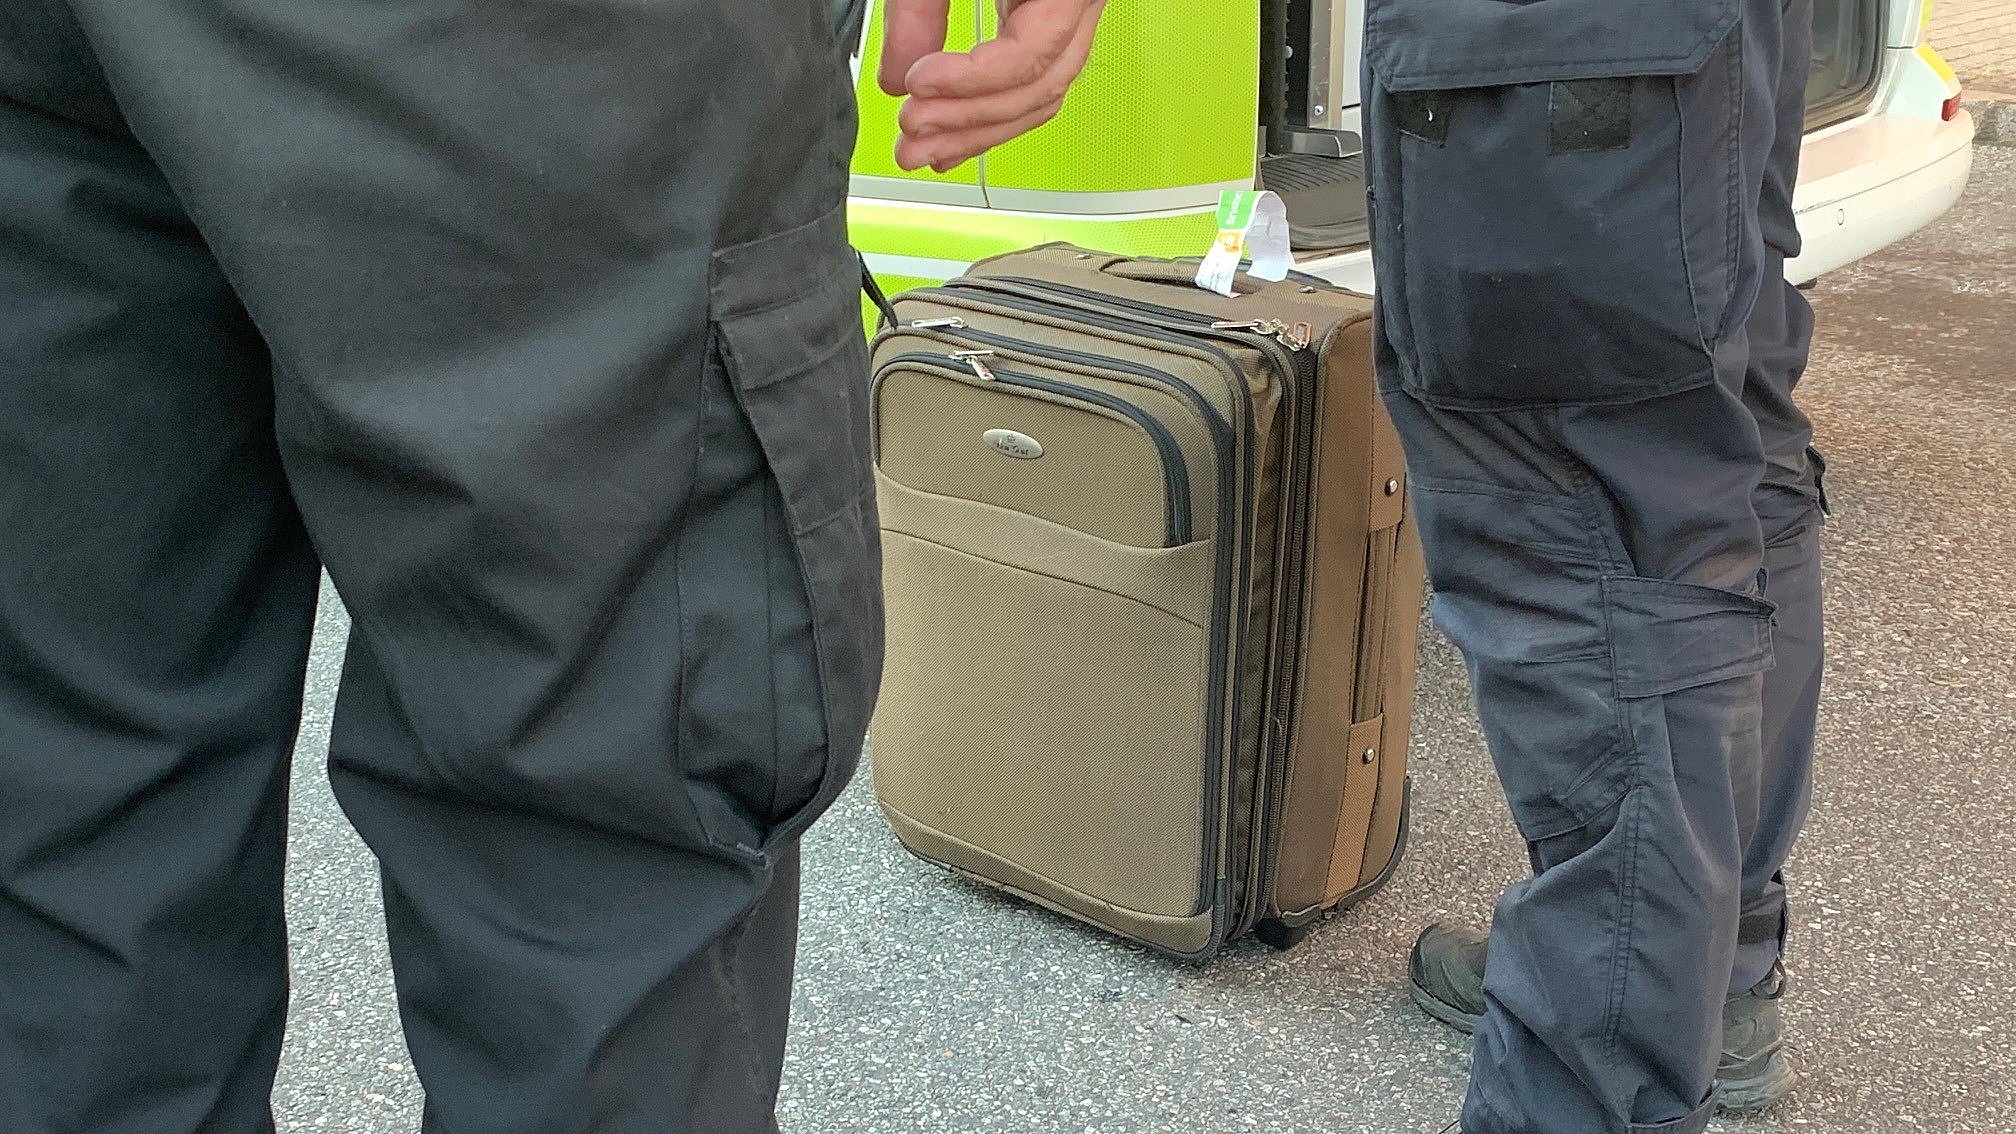 Muskuløs Hævde input Mistænkelig kuffert undersøgt af bomberyddere | TV2 Nord